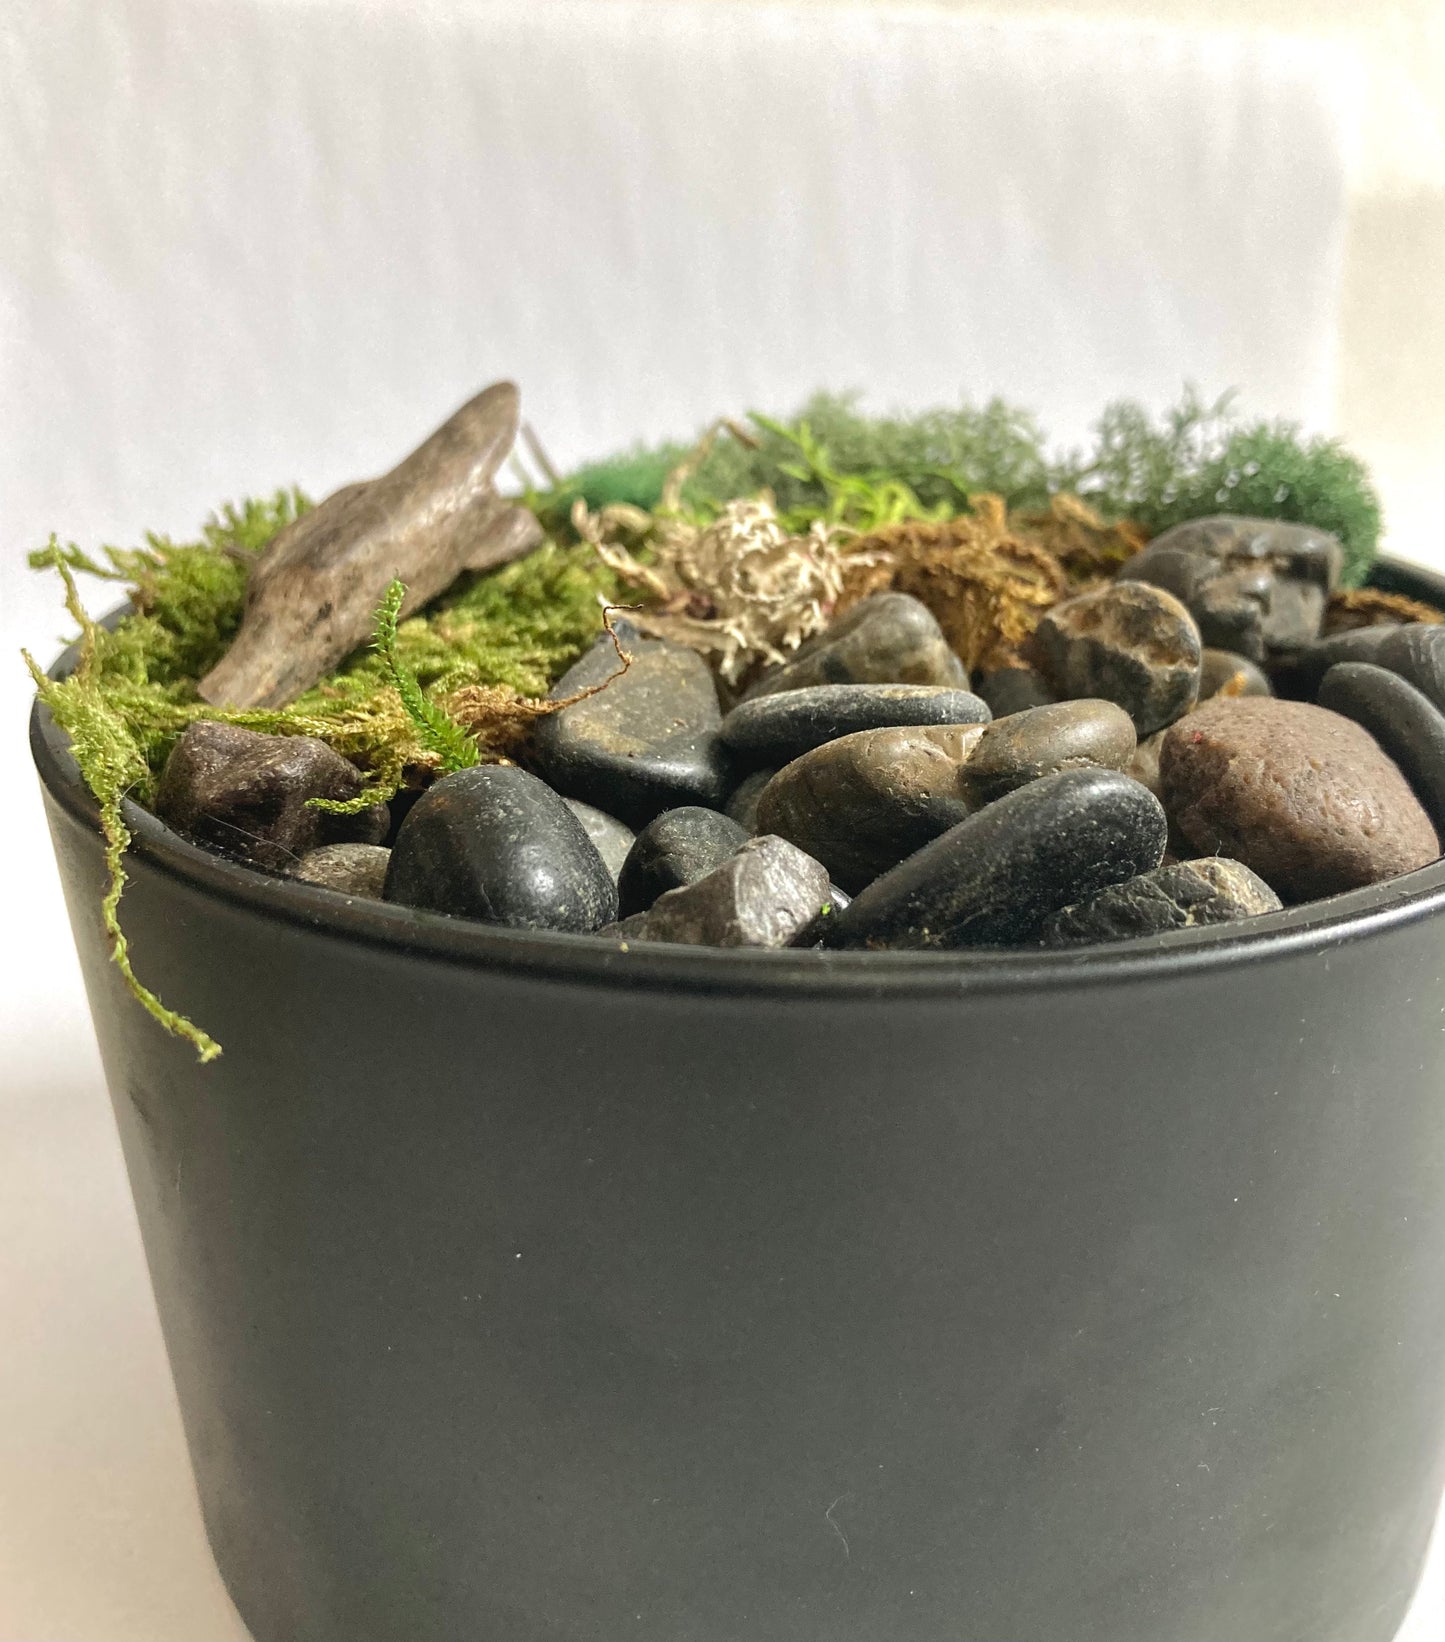 Moss Art Bowl - Handmade Biophilic Peace Garden